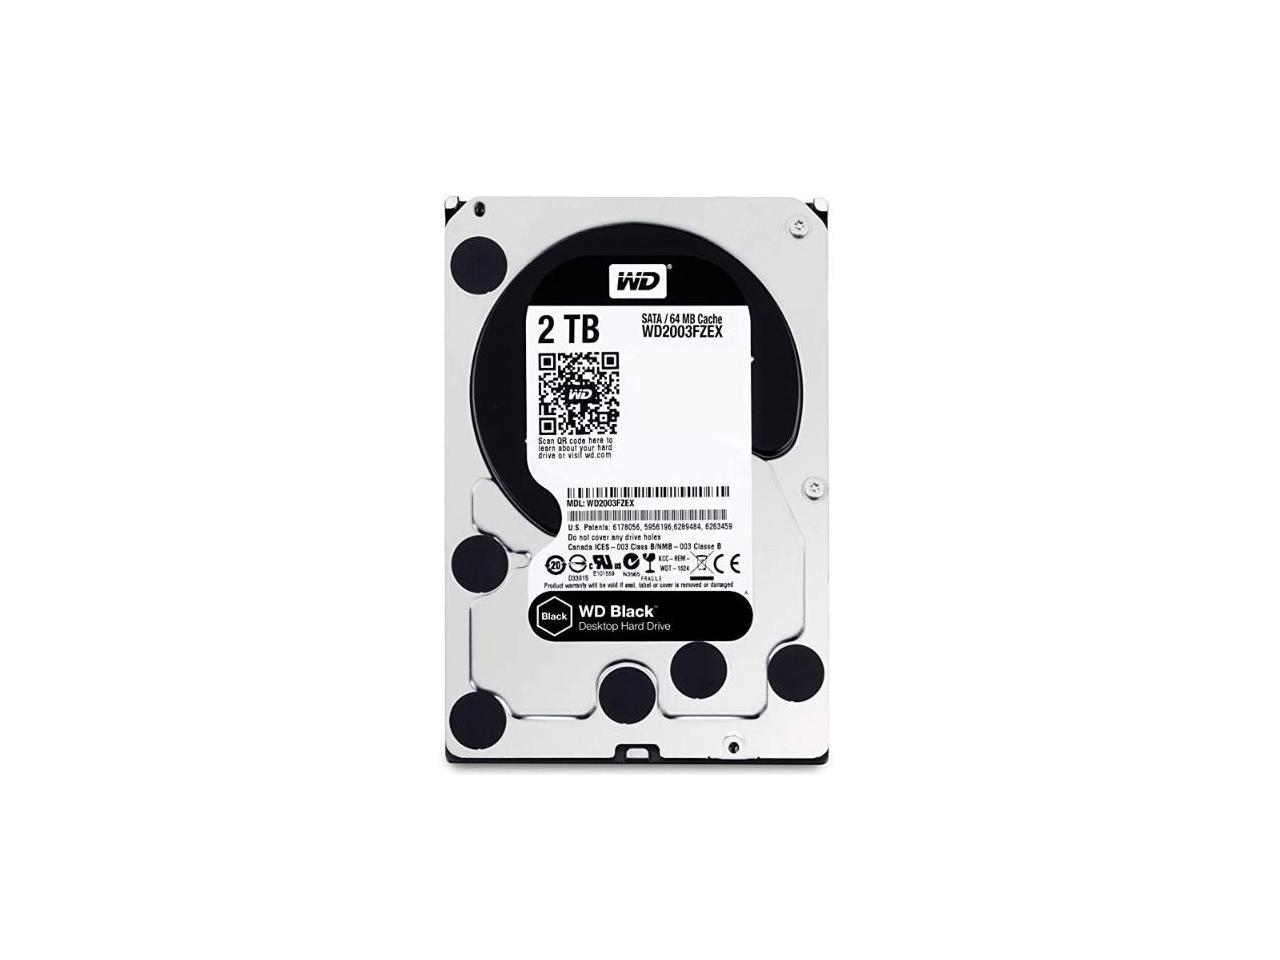 Wd Black 2tb Performance Desktop Hard Disk Drive 70 Rpm Sata 6 Gb S 64mb Cache 3 5 Inch Wd03fzex Newegg Com